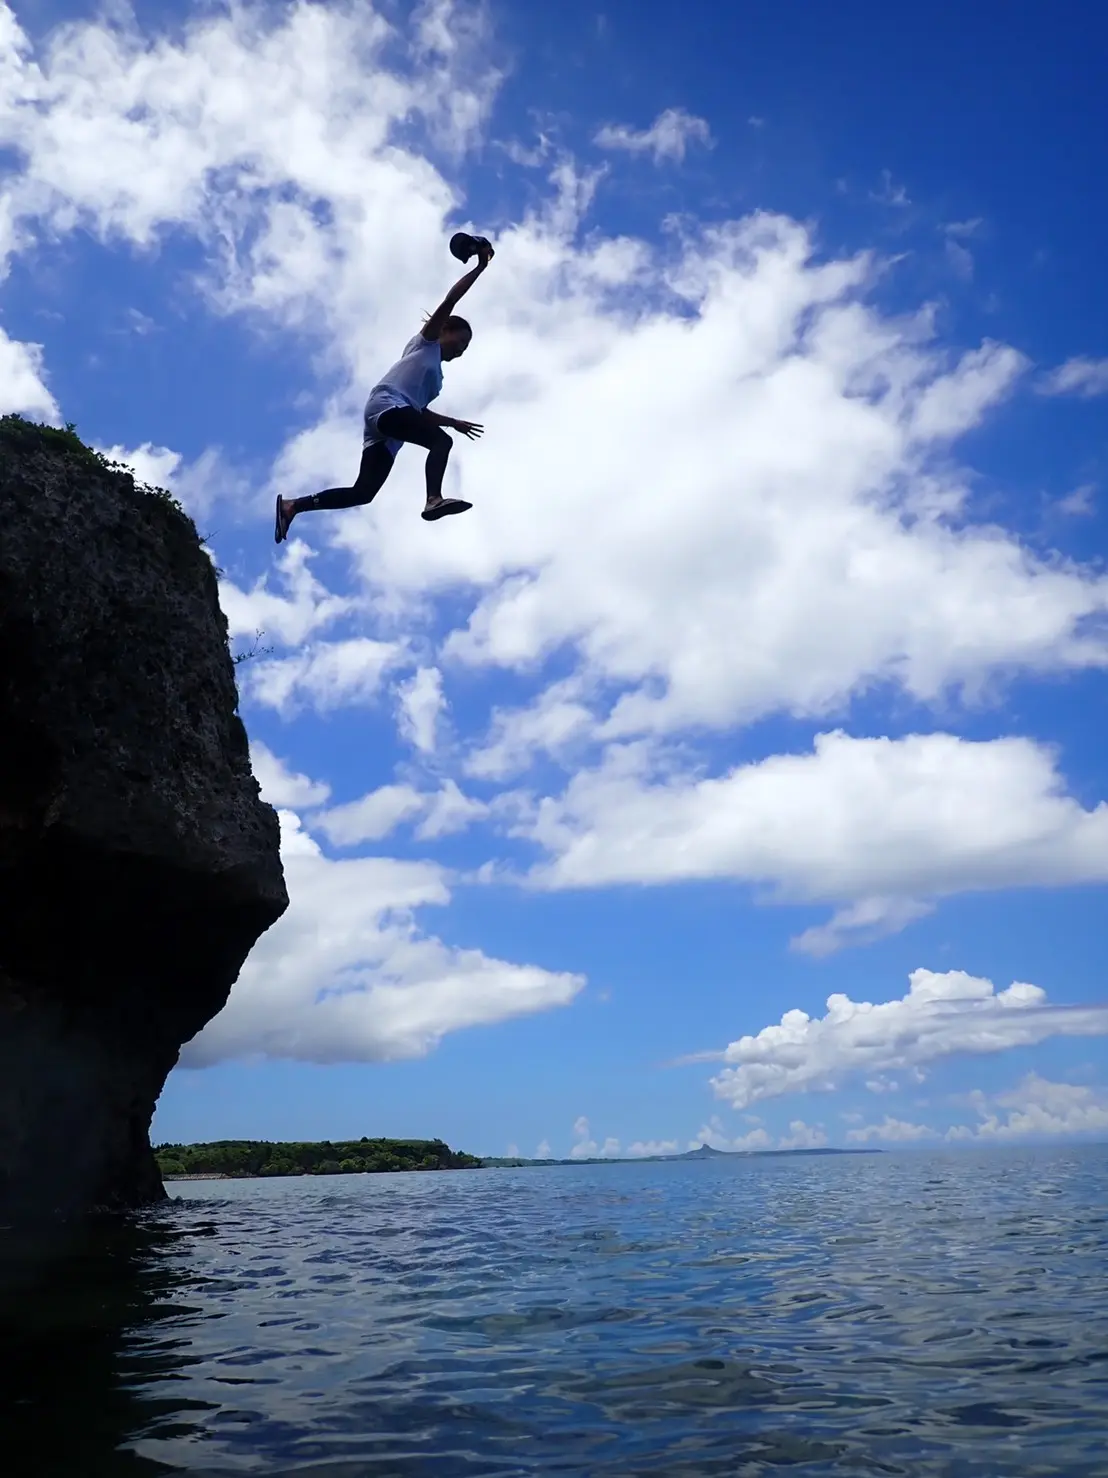 沖縄の海を満喫できる『カヤック』おすすめの場所とツアー